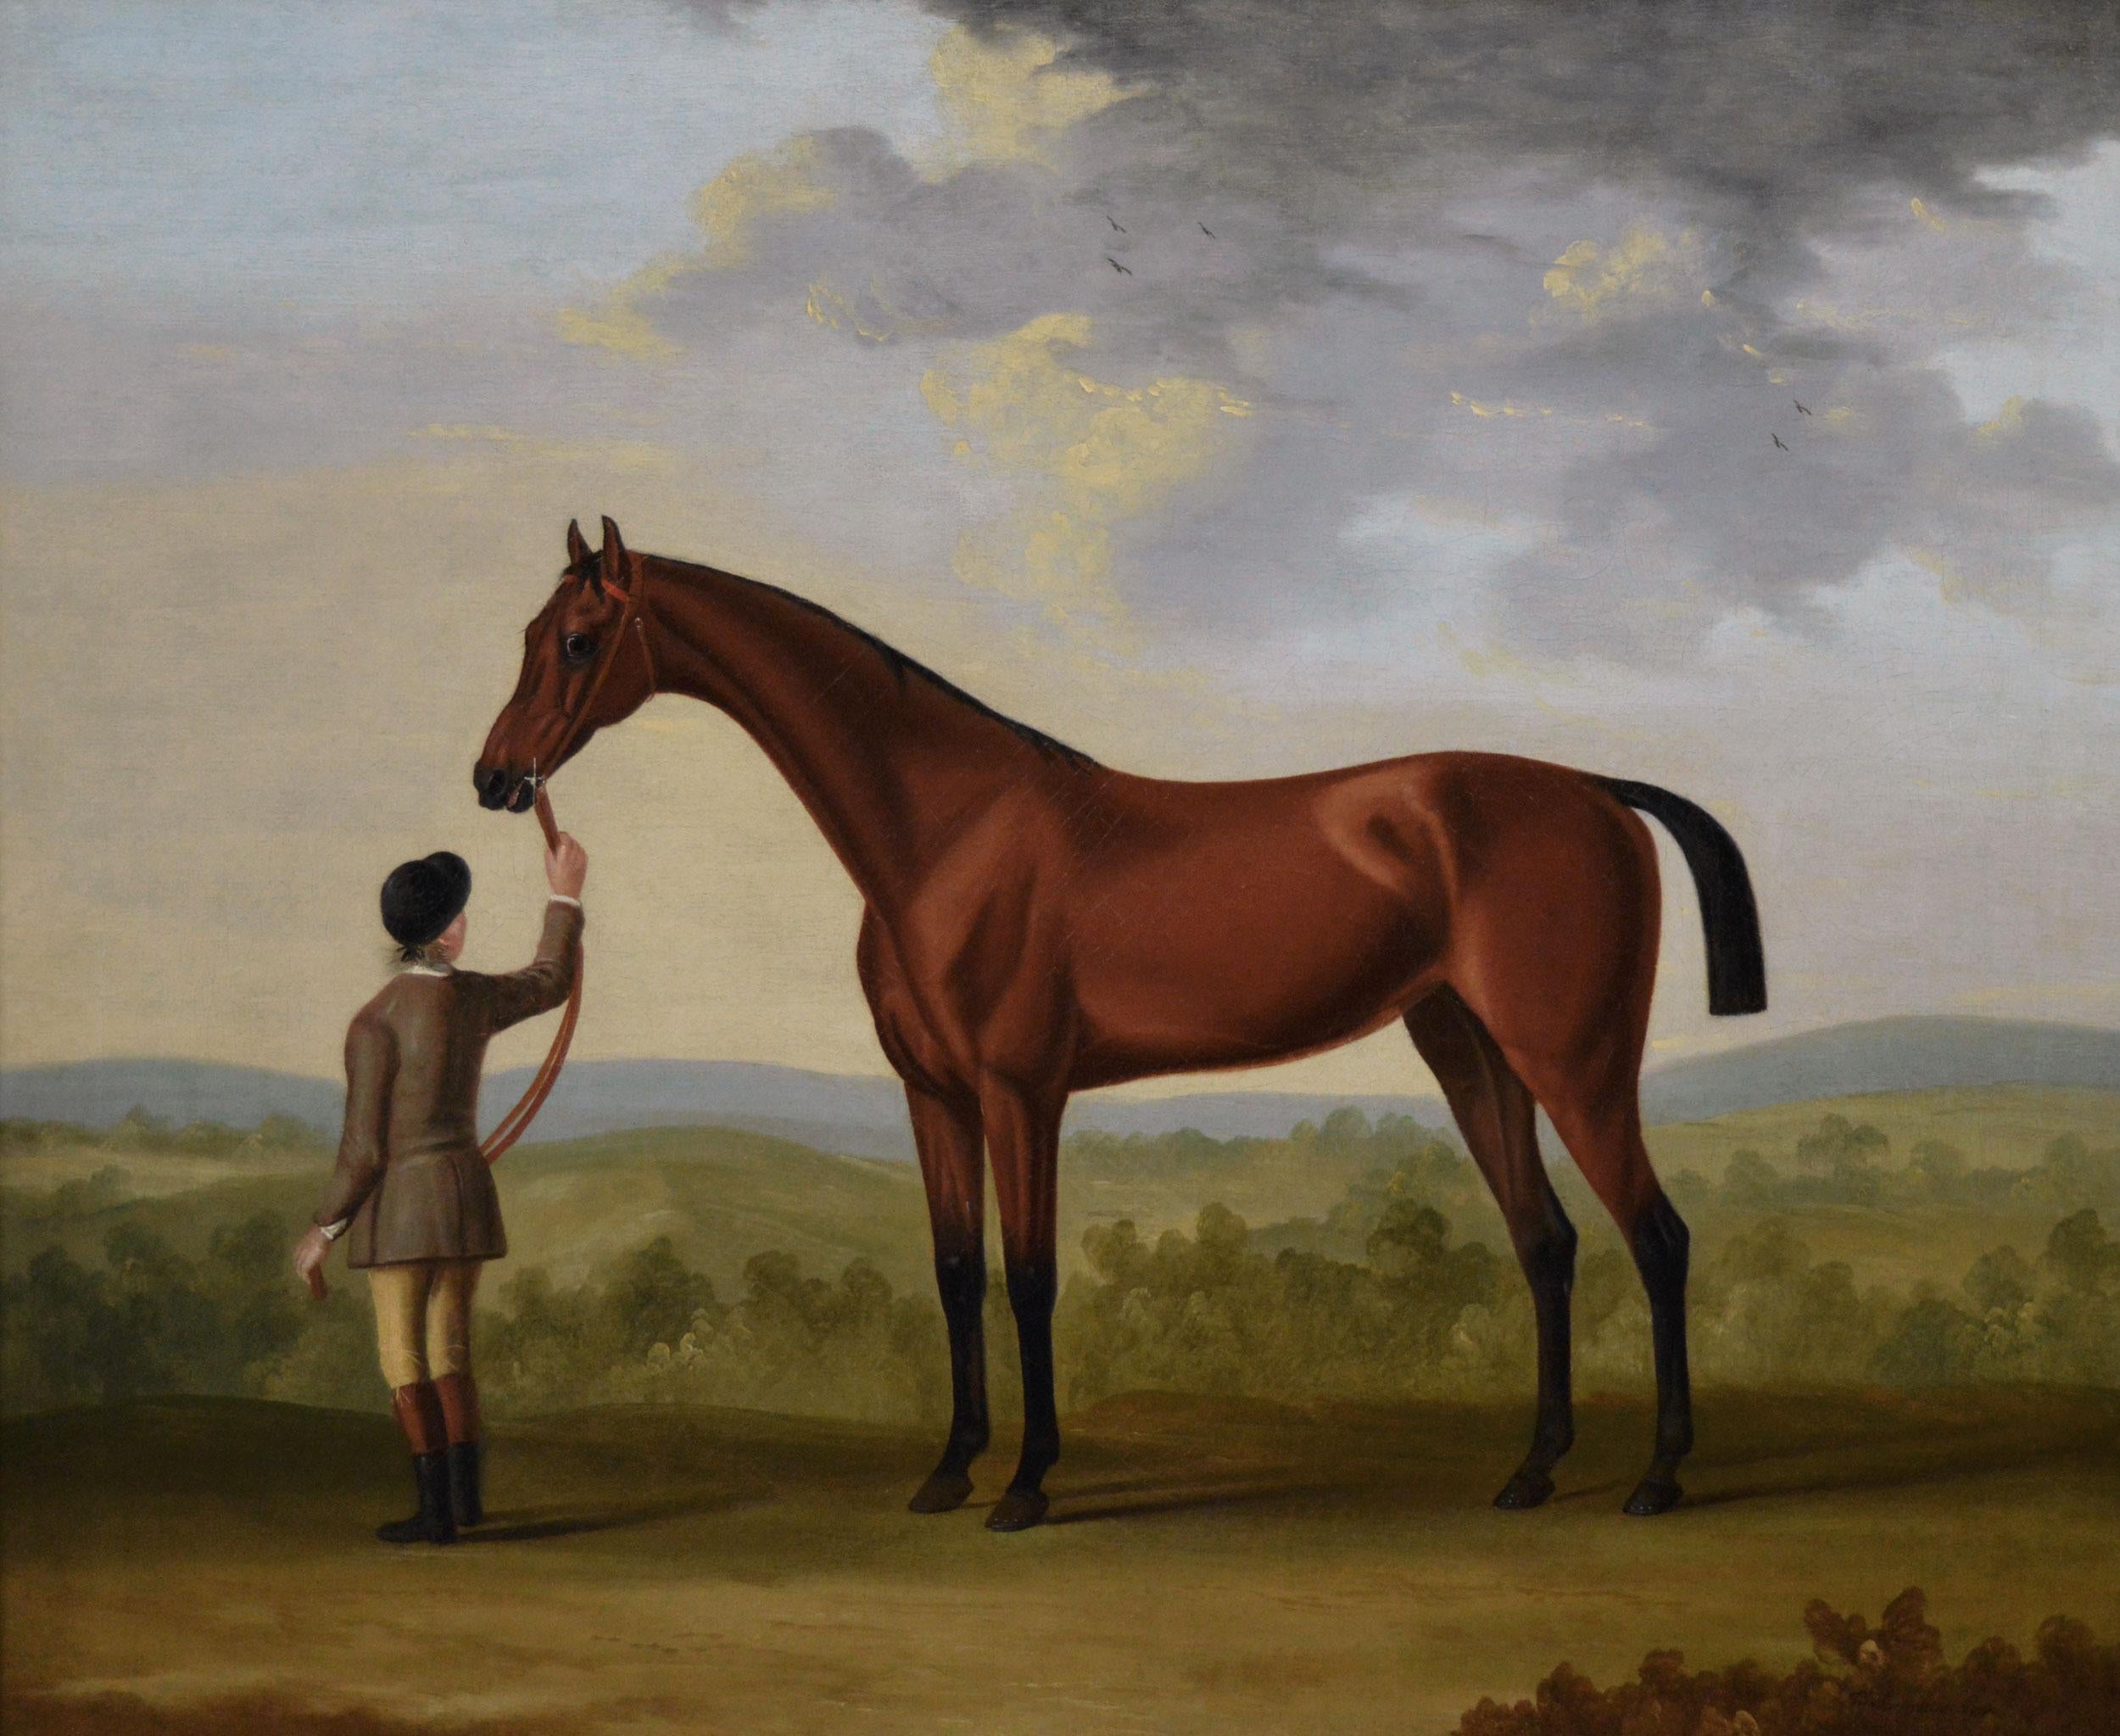 Porträt von Sportpferden aus dem 18. Jahrhundert, Ölgemälde eines Rennpferdes und eines Reiters  – Painting von Francis Sartorius